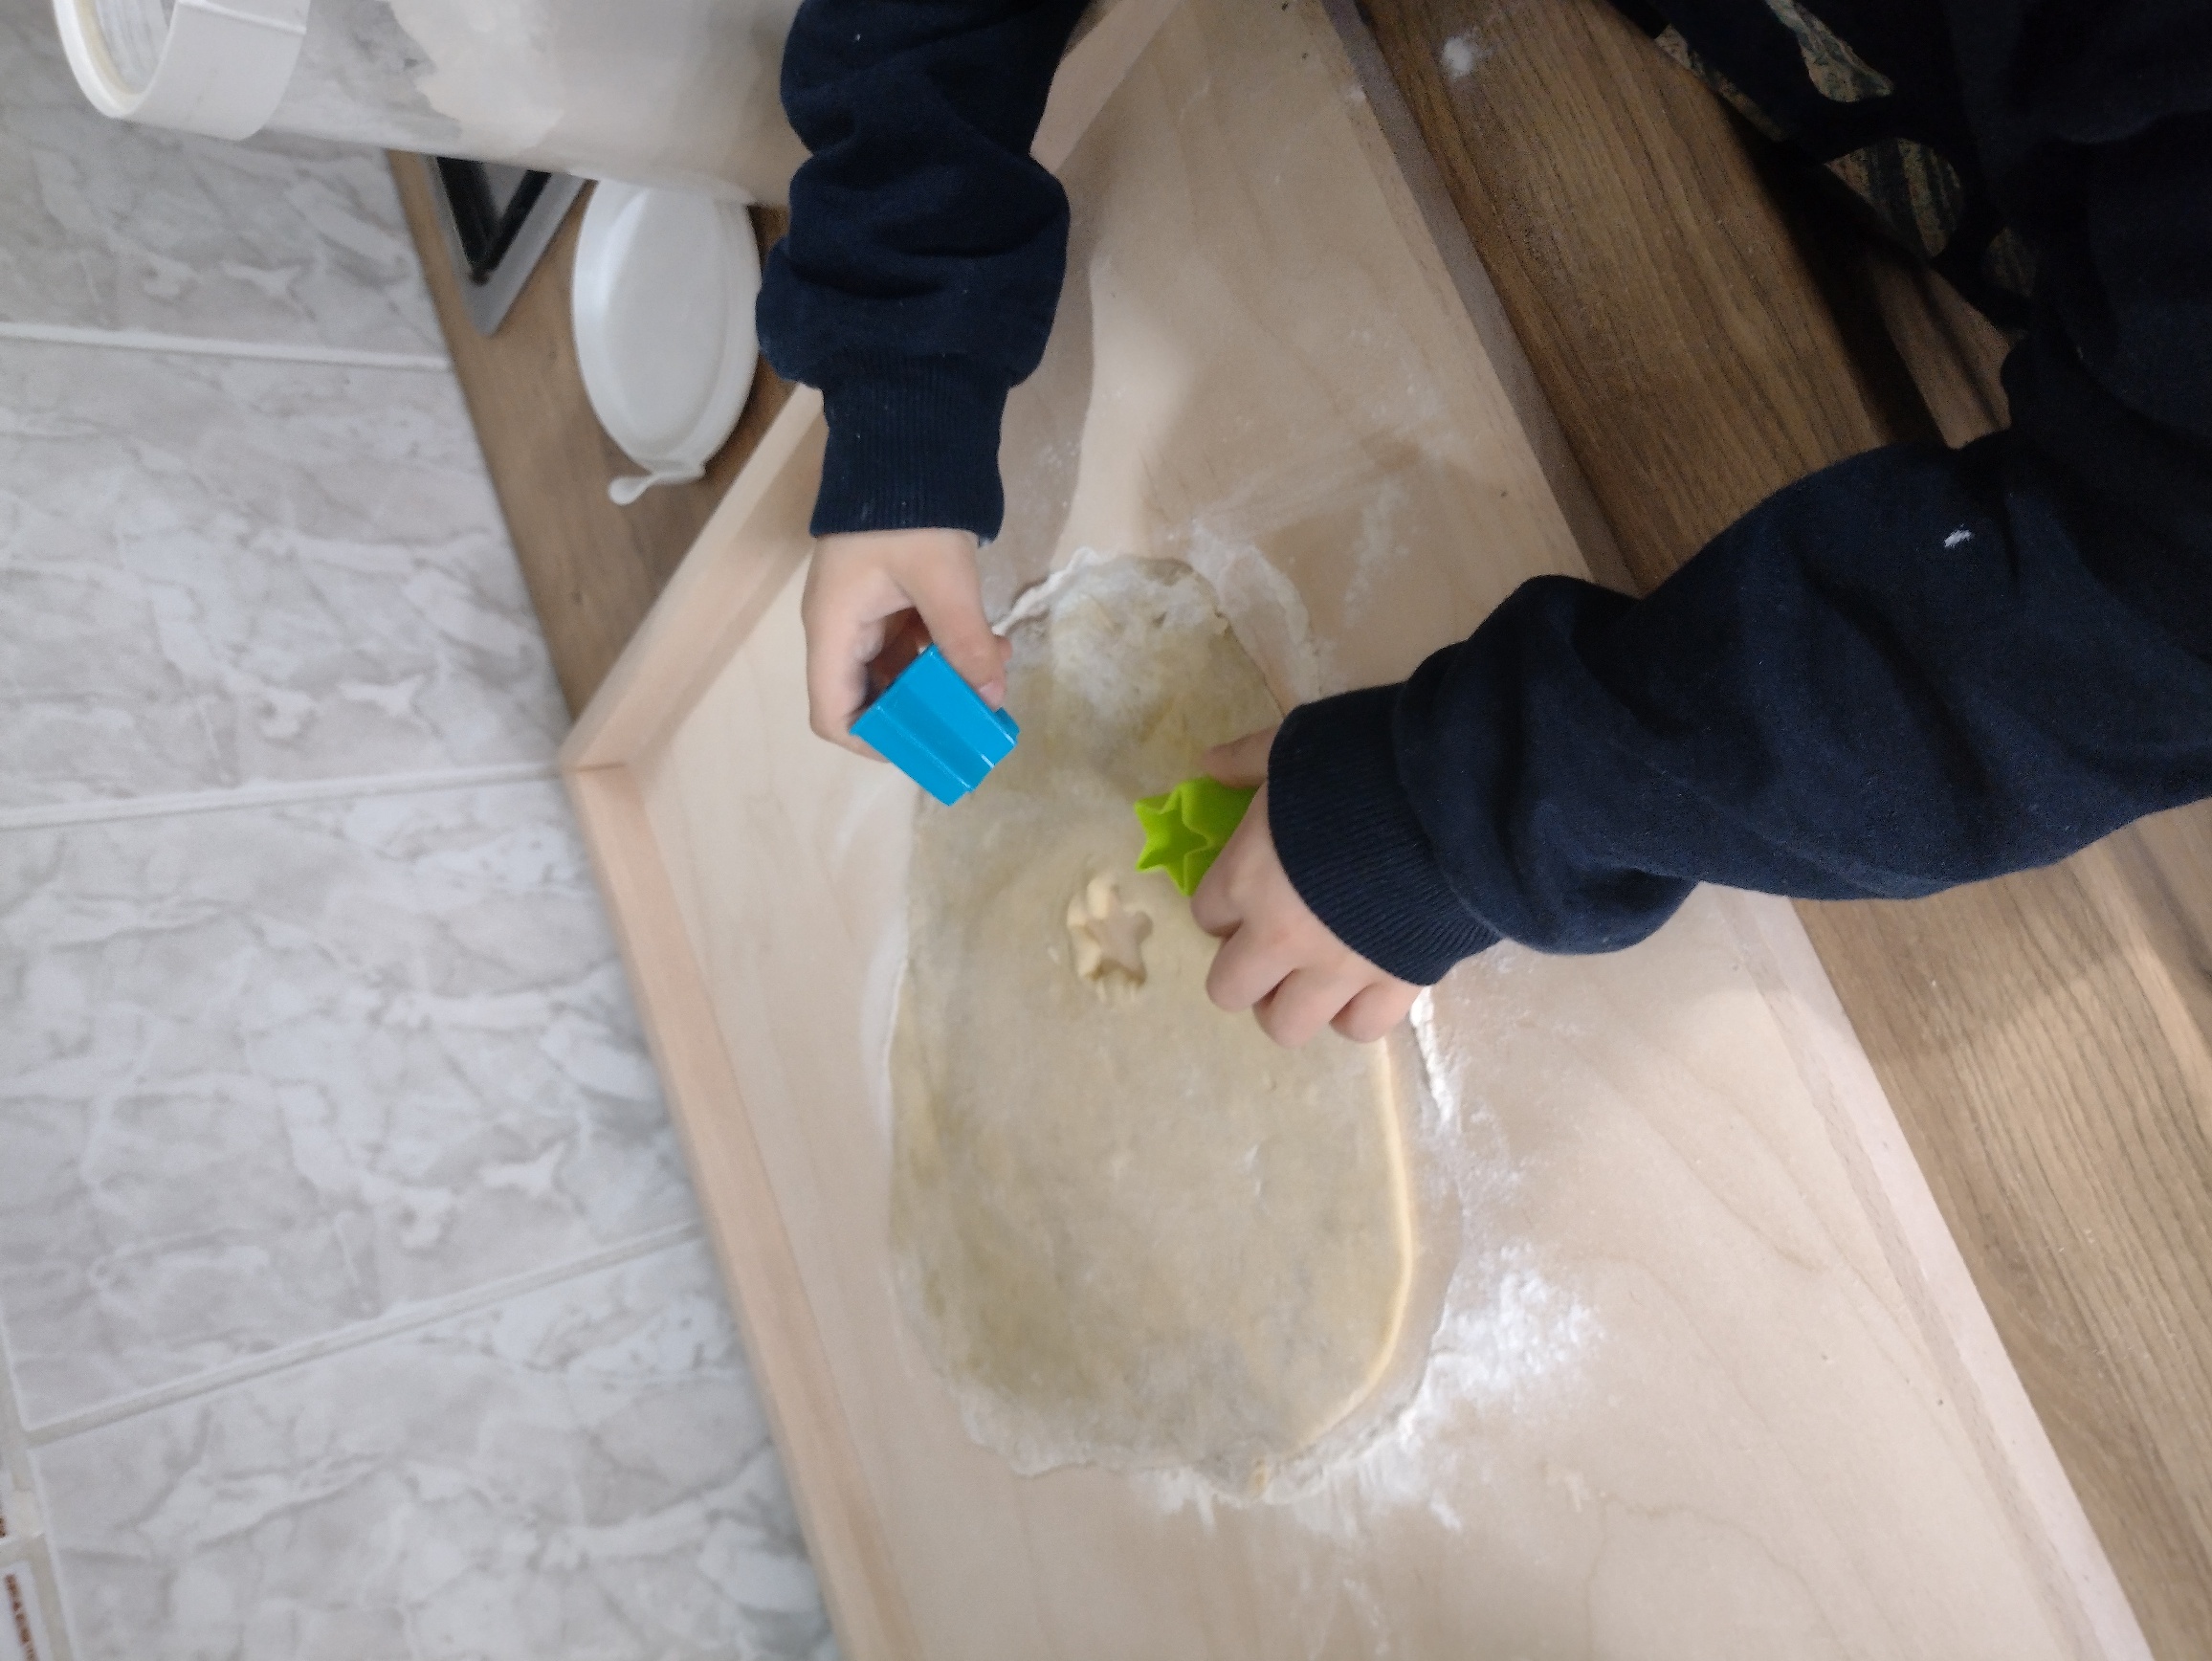 wychowanek wykrawa foremką kształty z ciasta